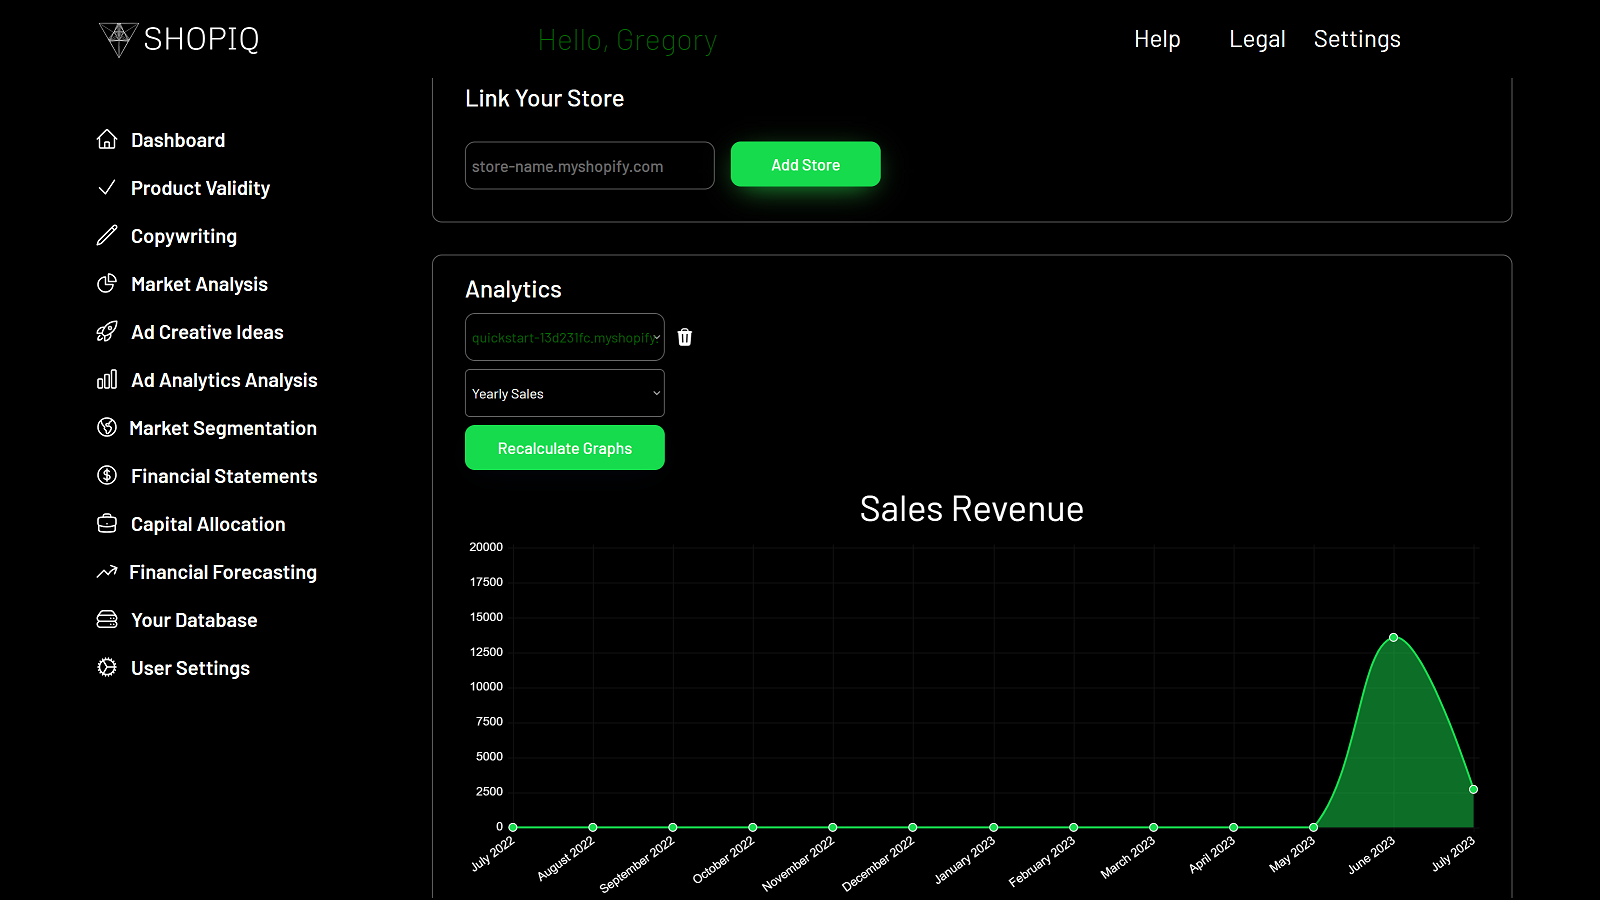 Sales revenue graph for example shop